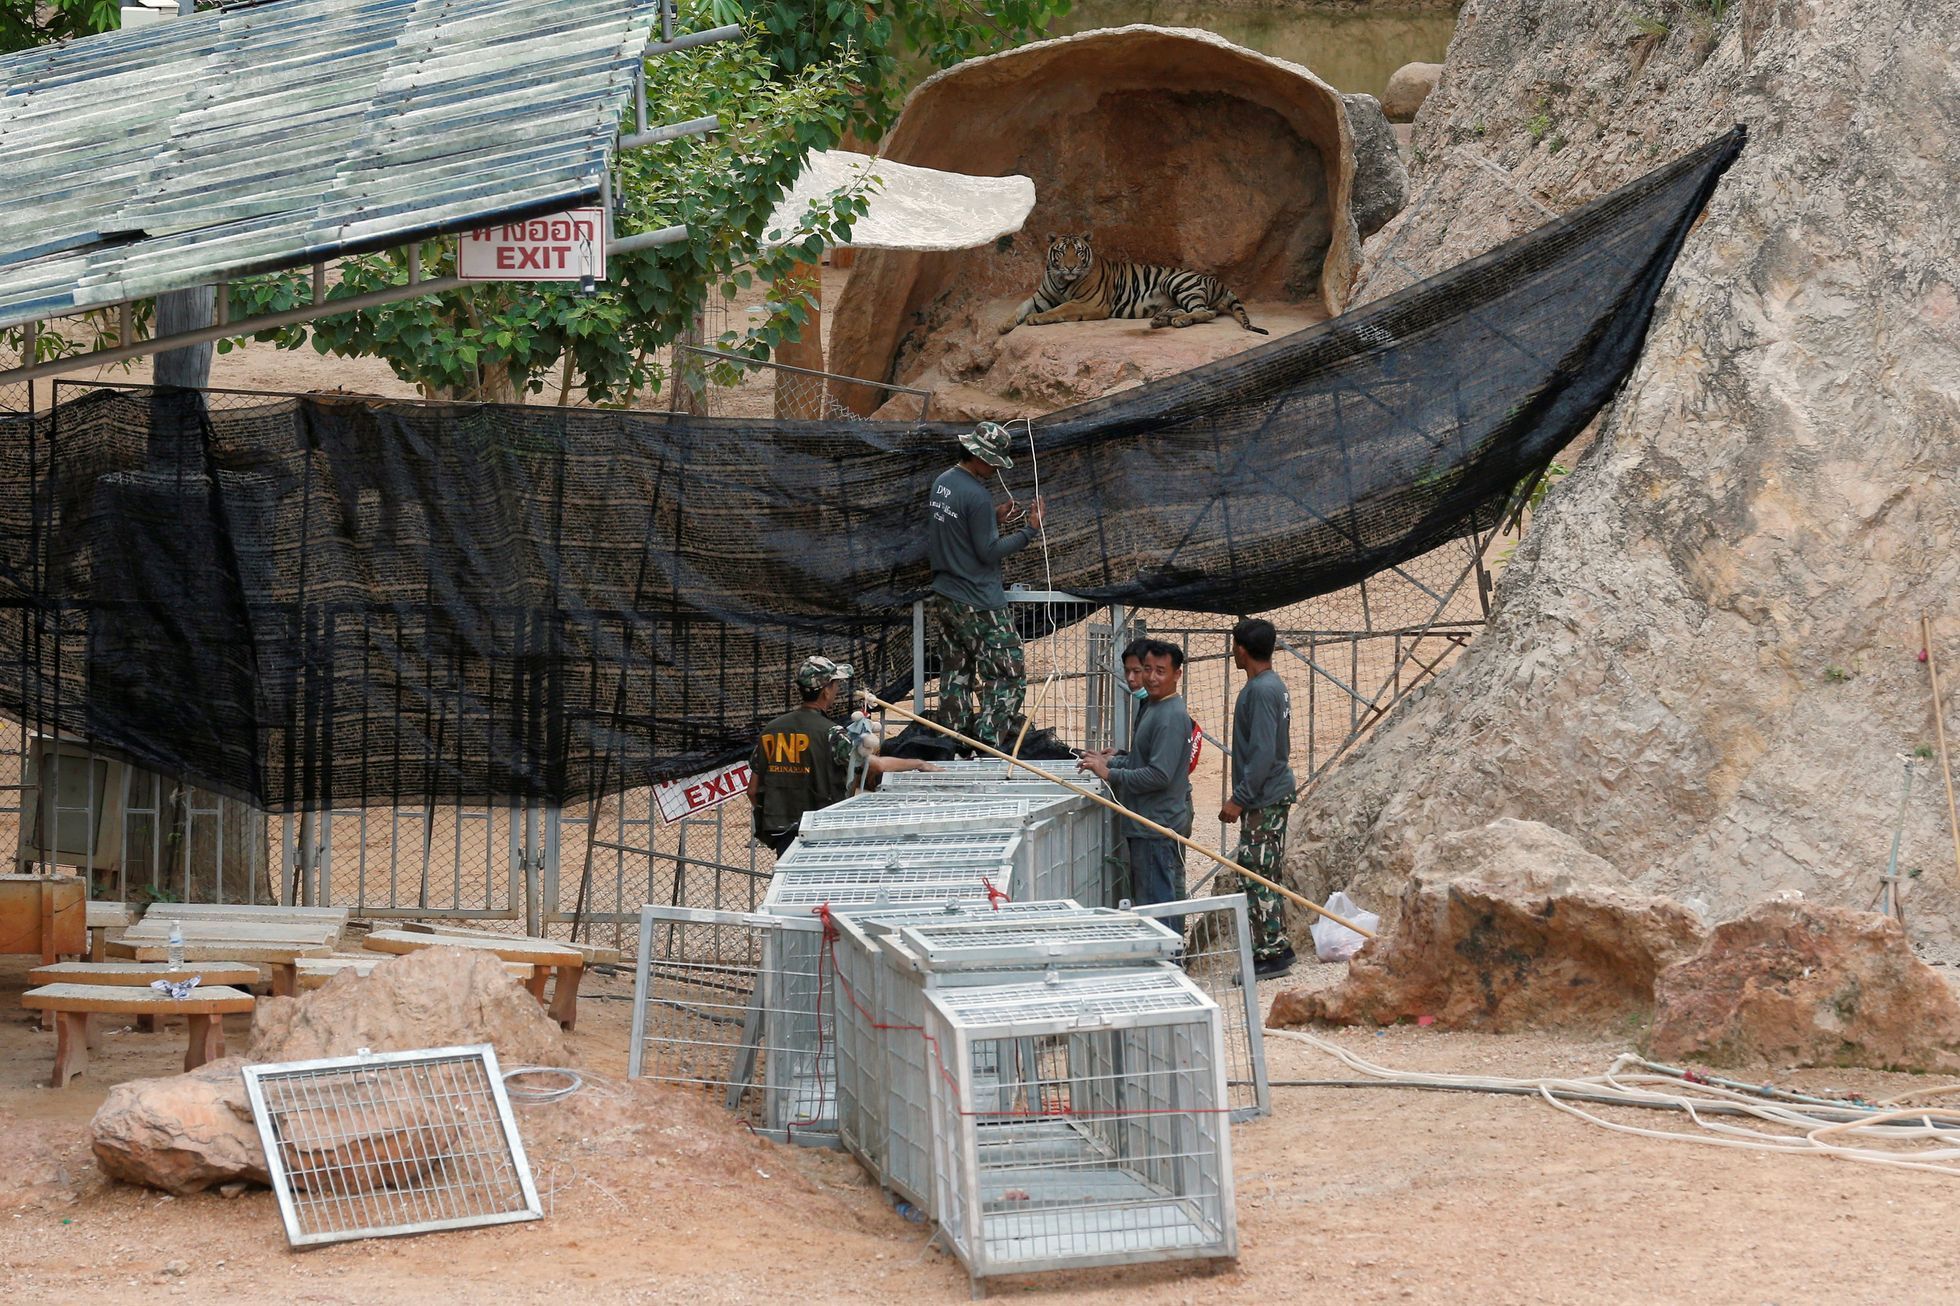 Thajsko - přesouvání tygrů z buddhistického chrámu